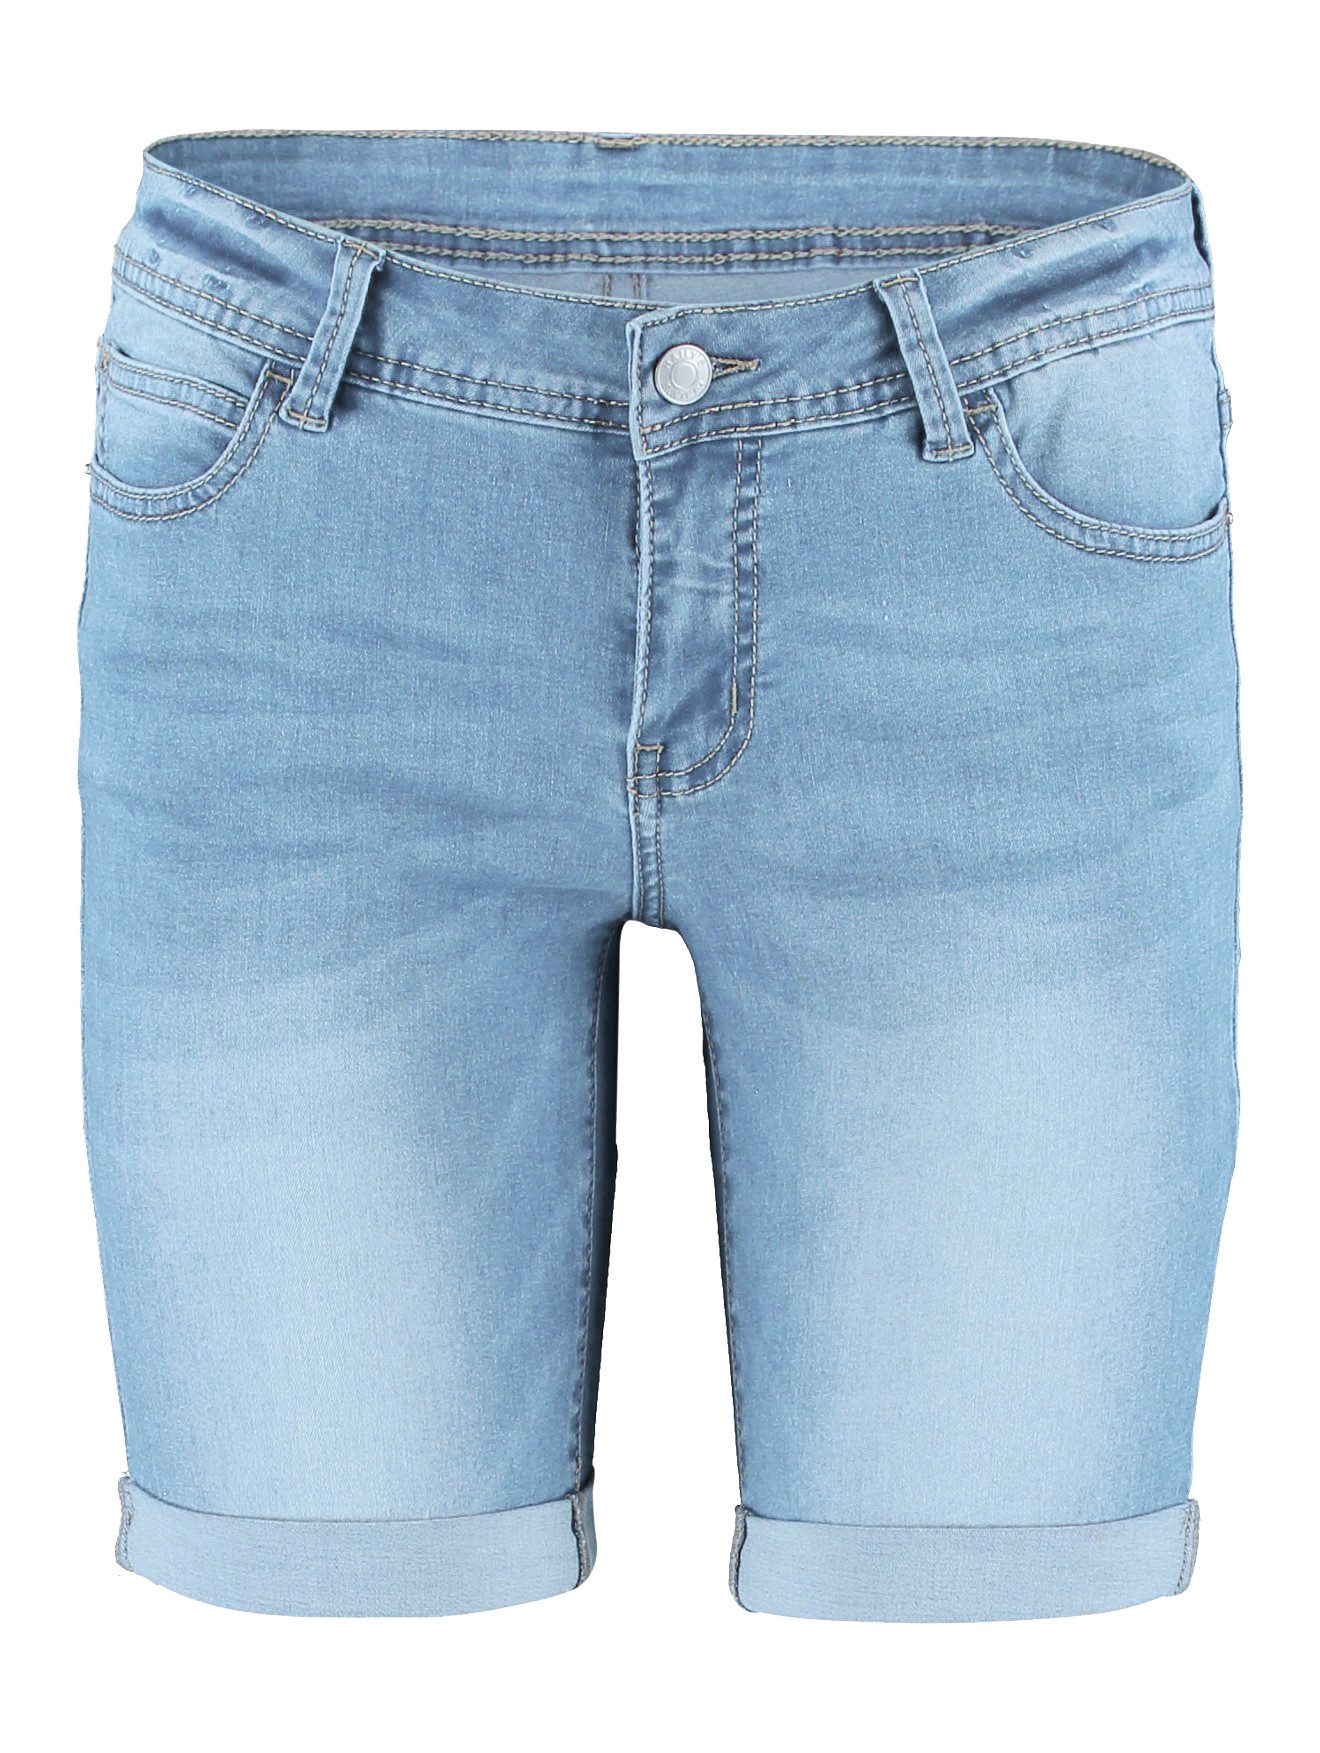 HaILY’S Boyfriend-Jeans Shorts Denim Mid Waist Bermudas 7446 in Blau